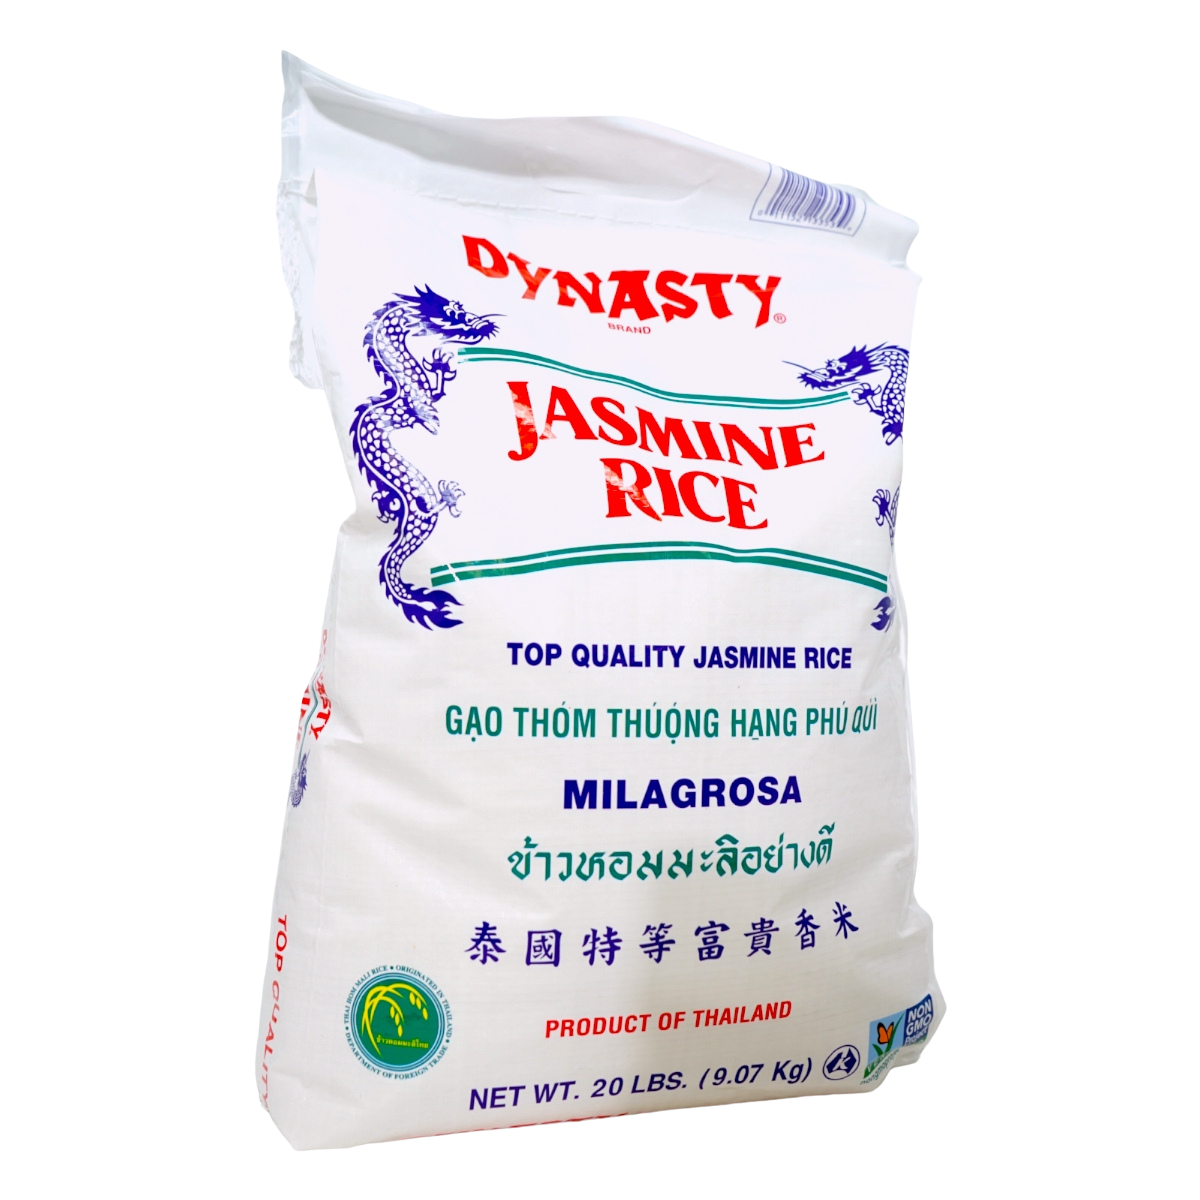 Dynasty Jasmine Rice 20 lbs